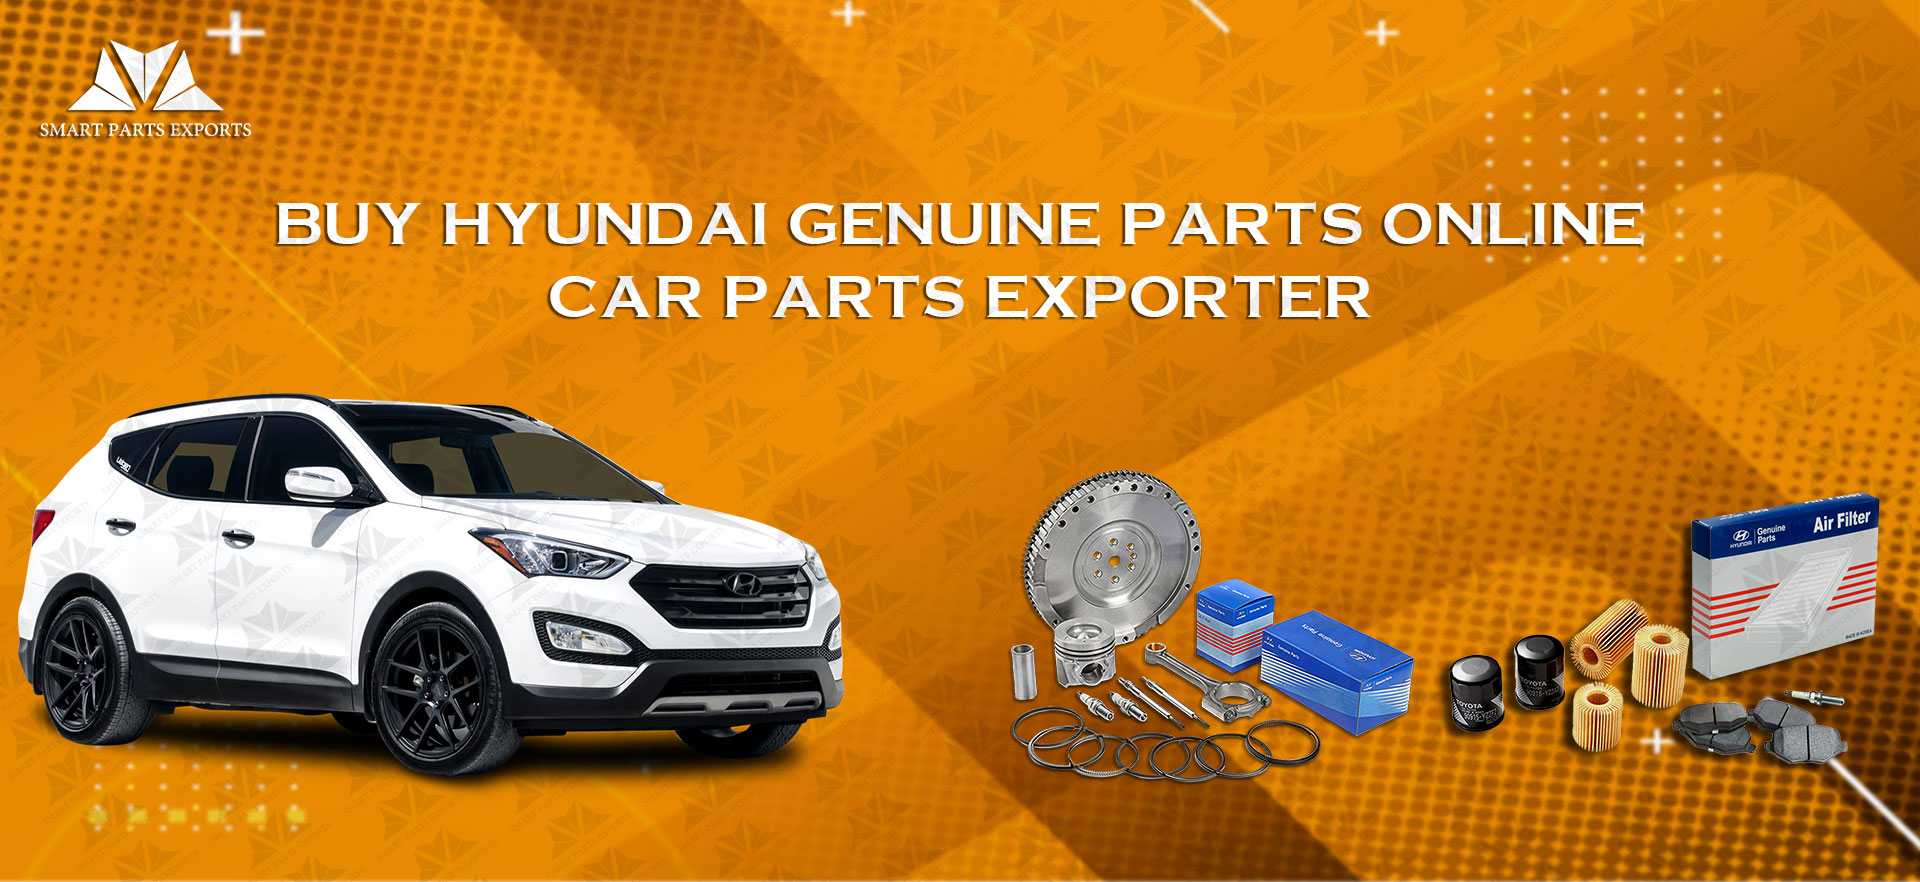 Buy Hyundai Genuine Parts Online: Car Parts Exporter